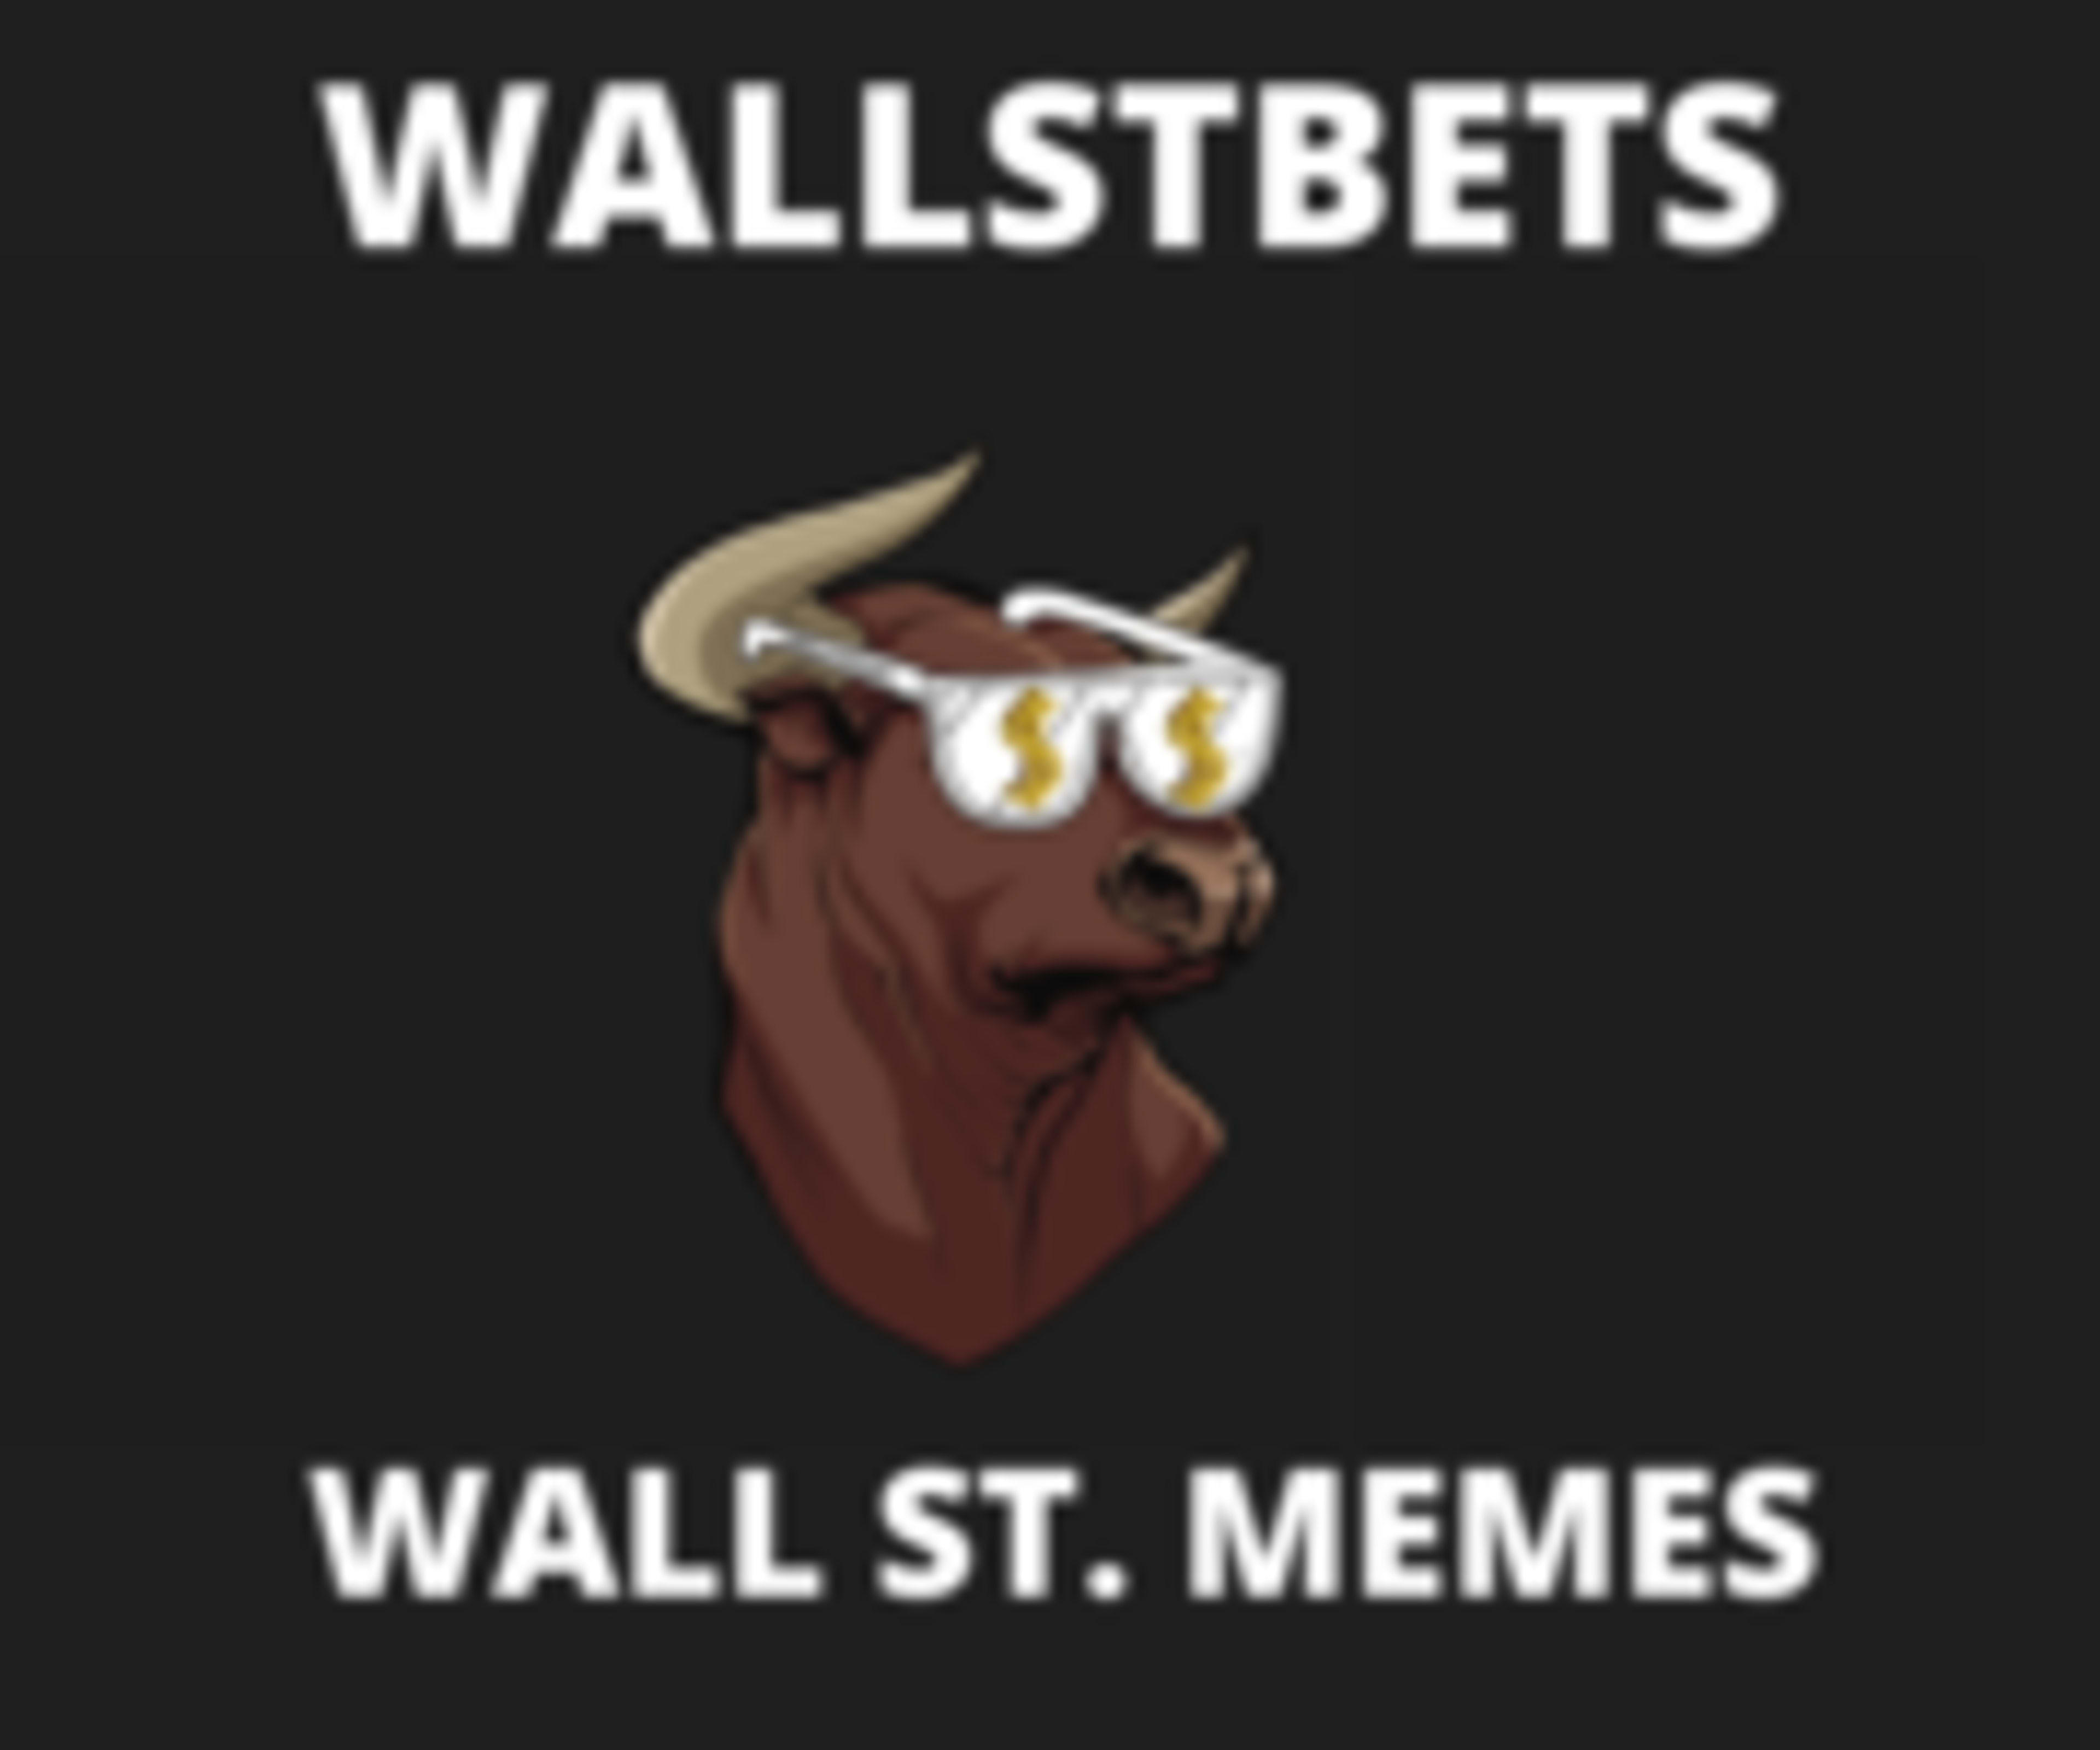 Wall Street MemesCode